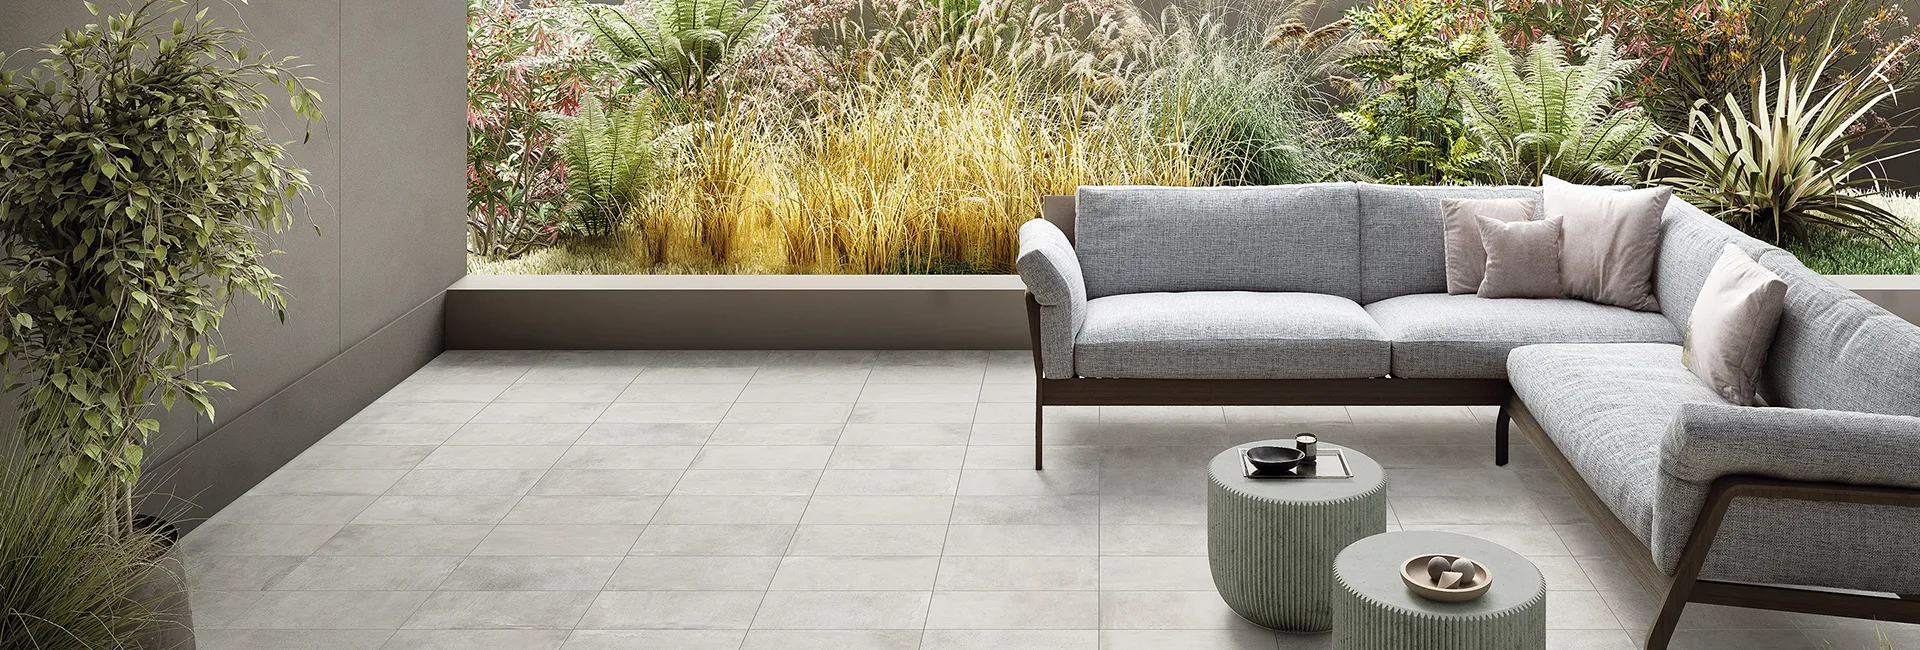 Italian: "Pavimento in gres effetto cemento collezione Street colore Milano Silver in terrazza con divano e giardino.